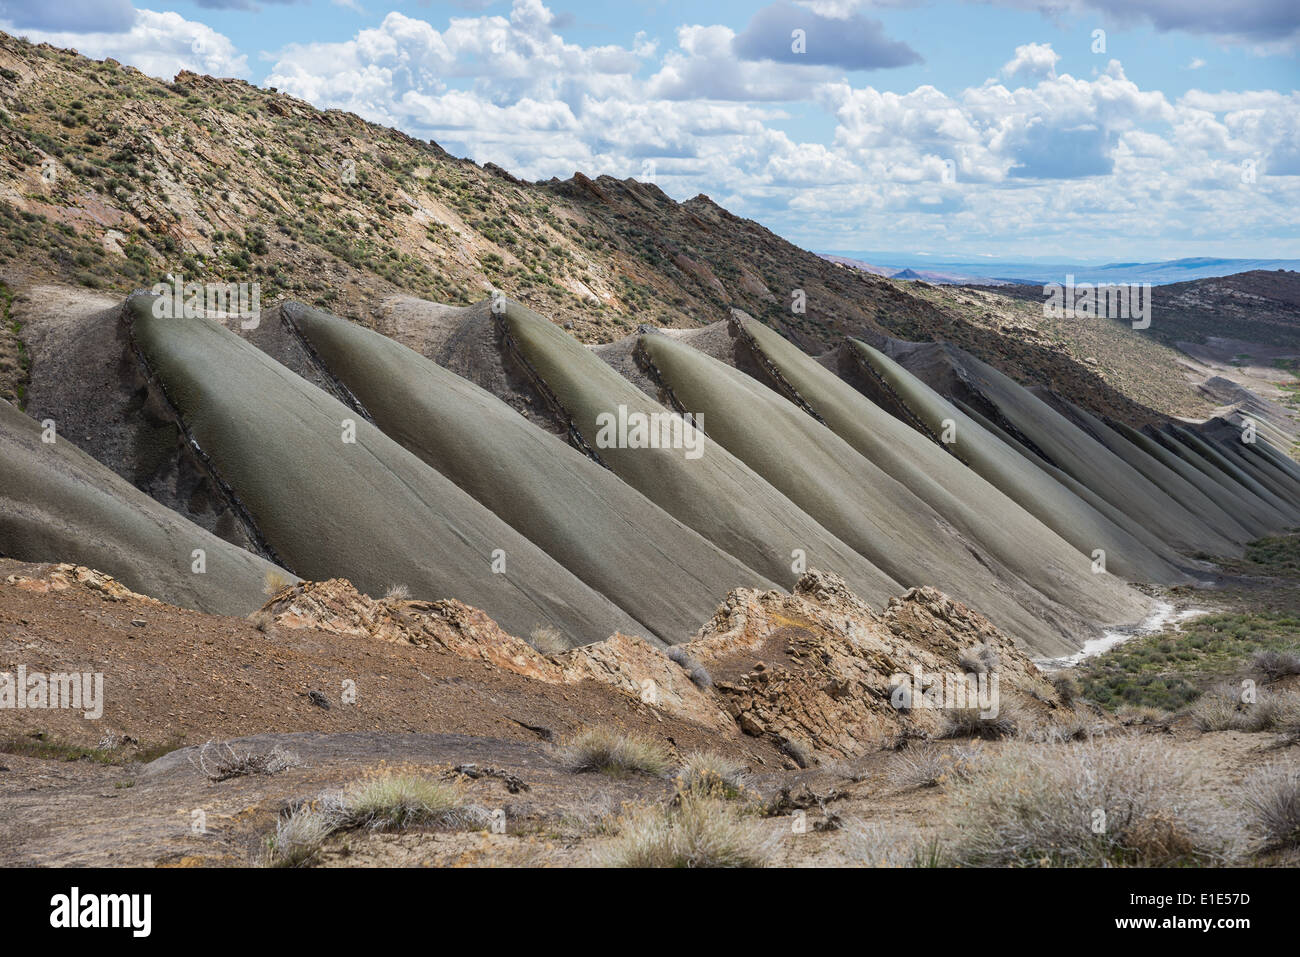 Grigio di una formazione di arenaria è stata erosa dall'acqua per formare interessante pattern. Il Wyoming, STATI UNITI D'AMERICA. Foto Stock